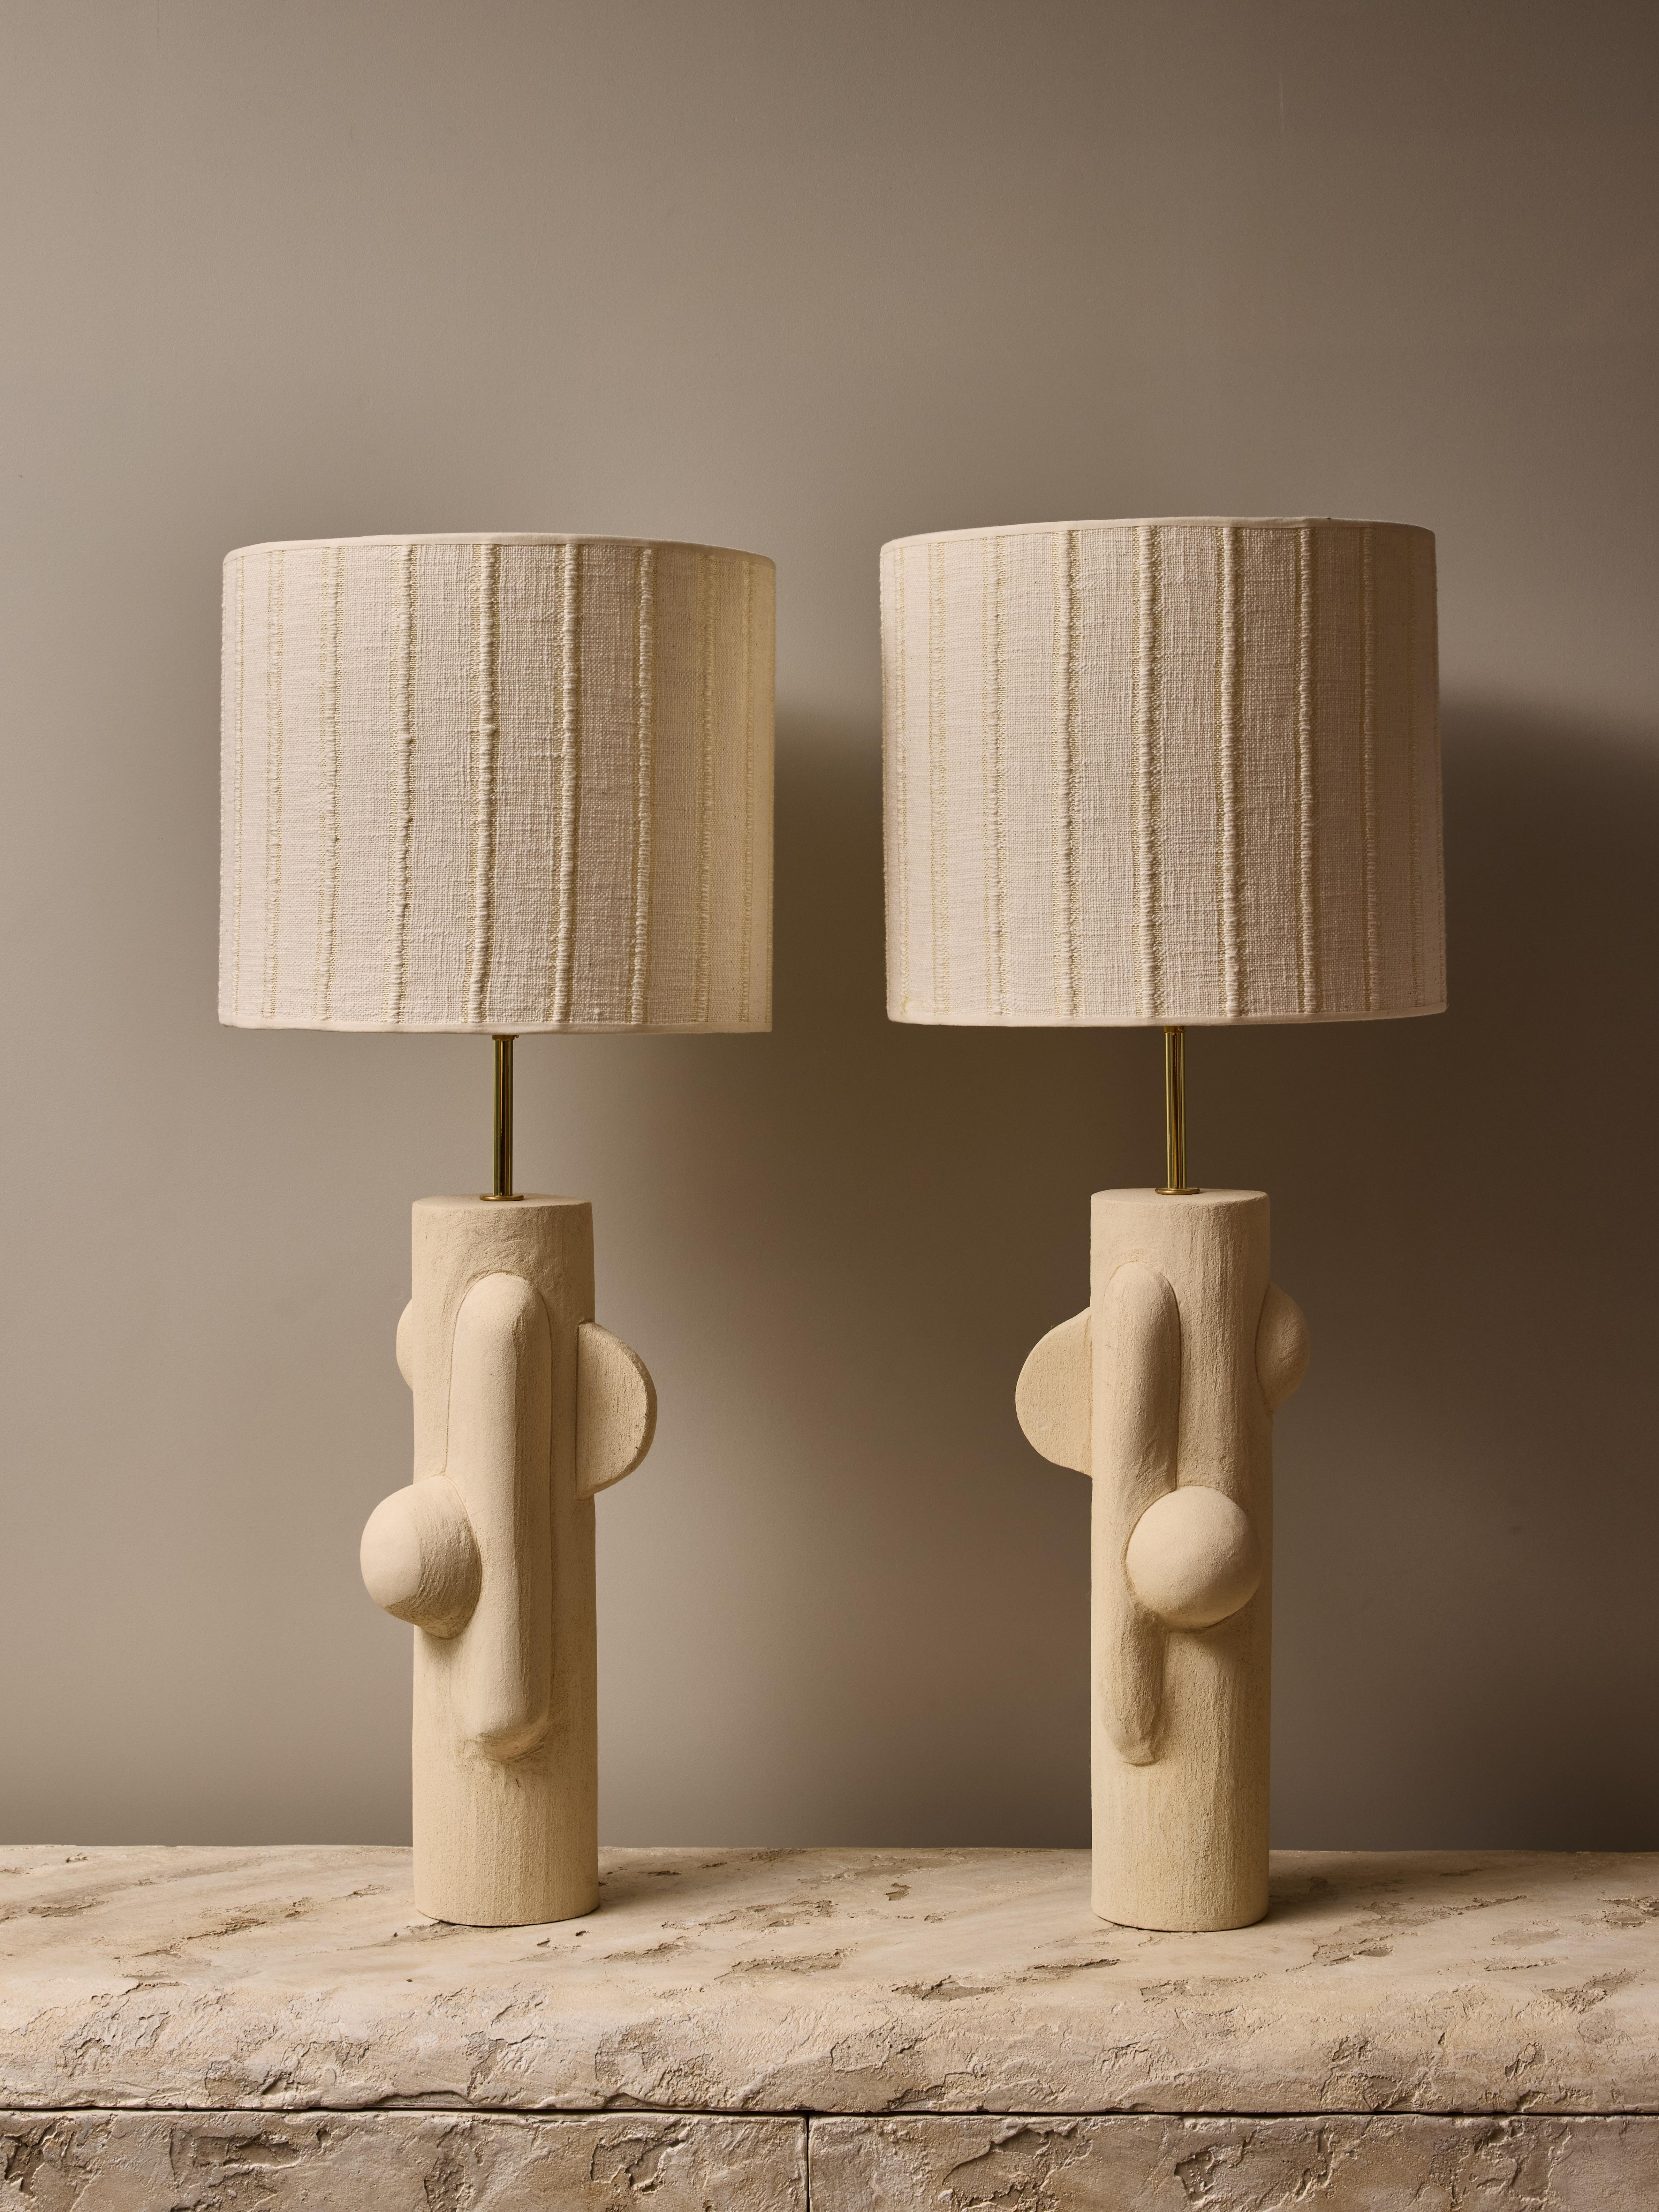 Ein Paar Keramik-Tischlampen von der talentierten französischen Künstlerin Olivia Cognet.

Diese dünnen röhrenförmigen Lampen haben ein gespiegeltes Design mit weichen geometrischen Formen, Messingbeschläge und einen individuellen Lampenschirm.

Auf